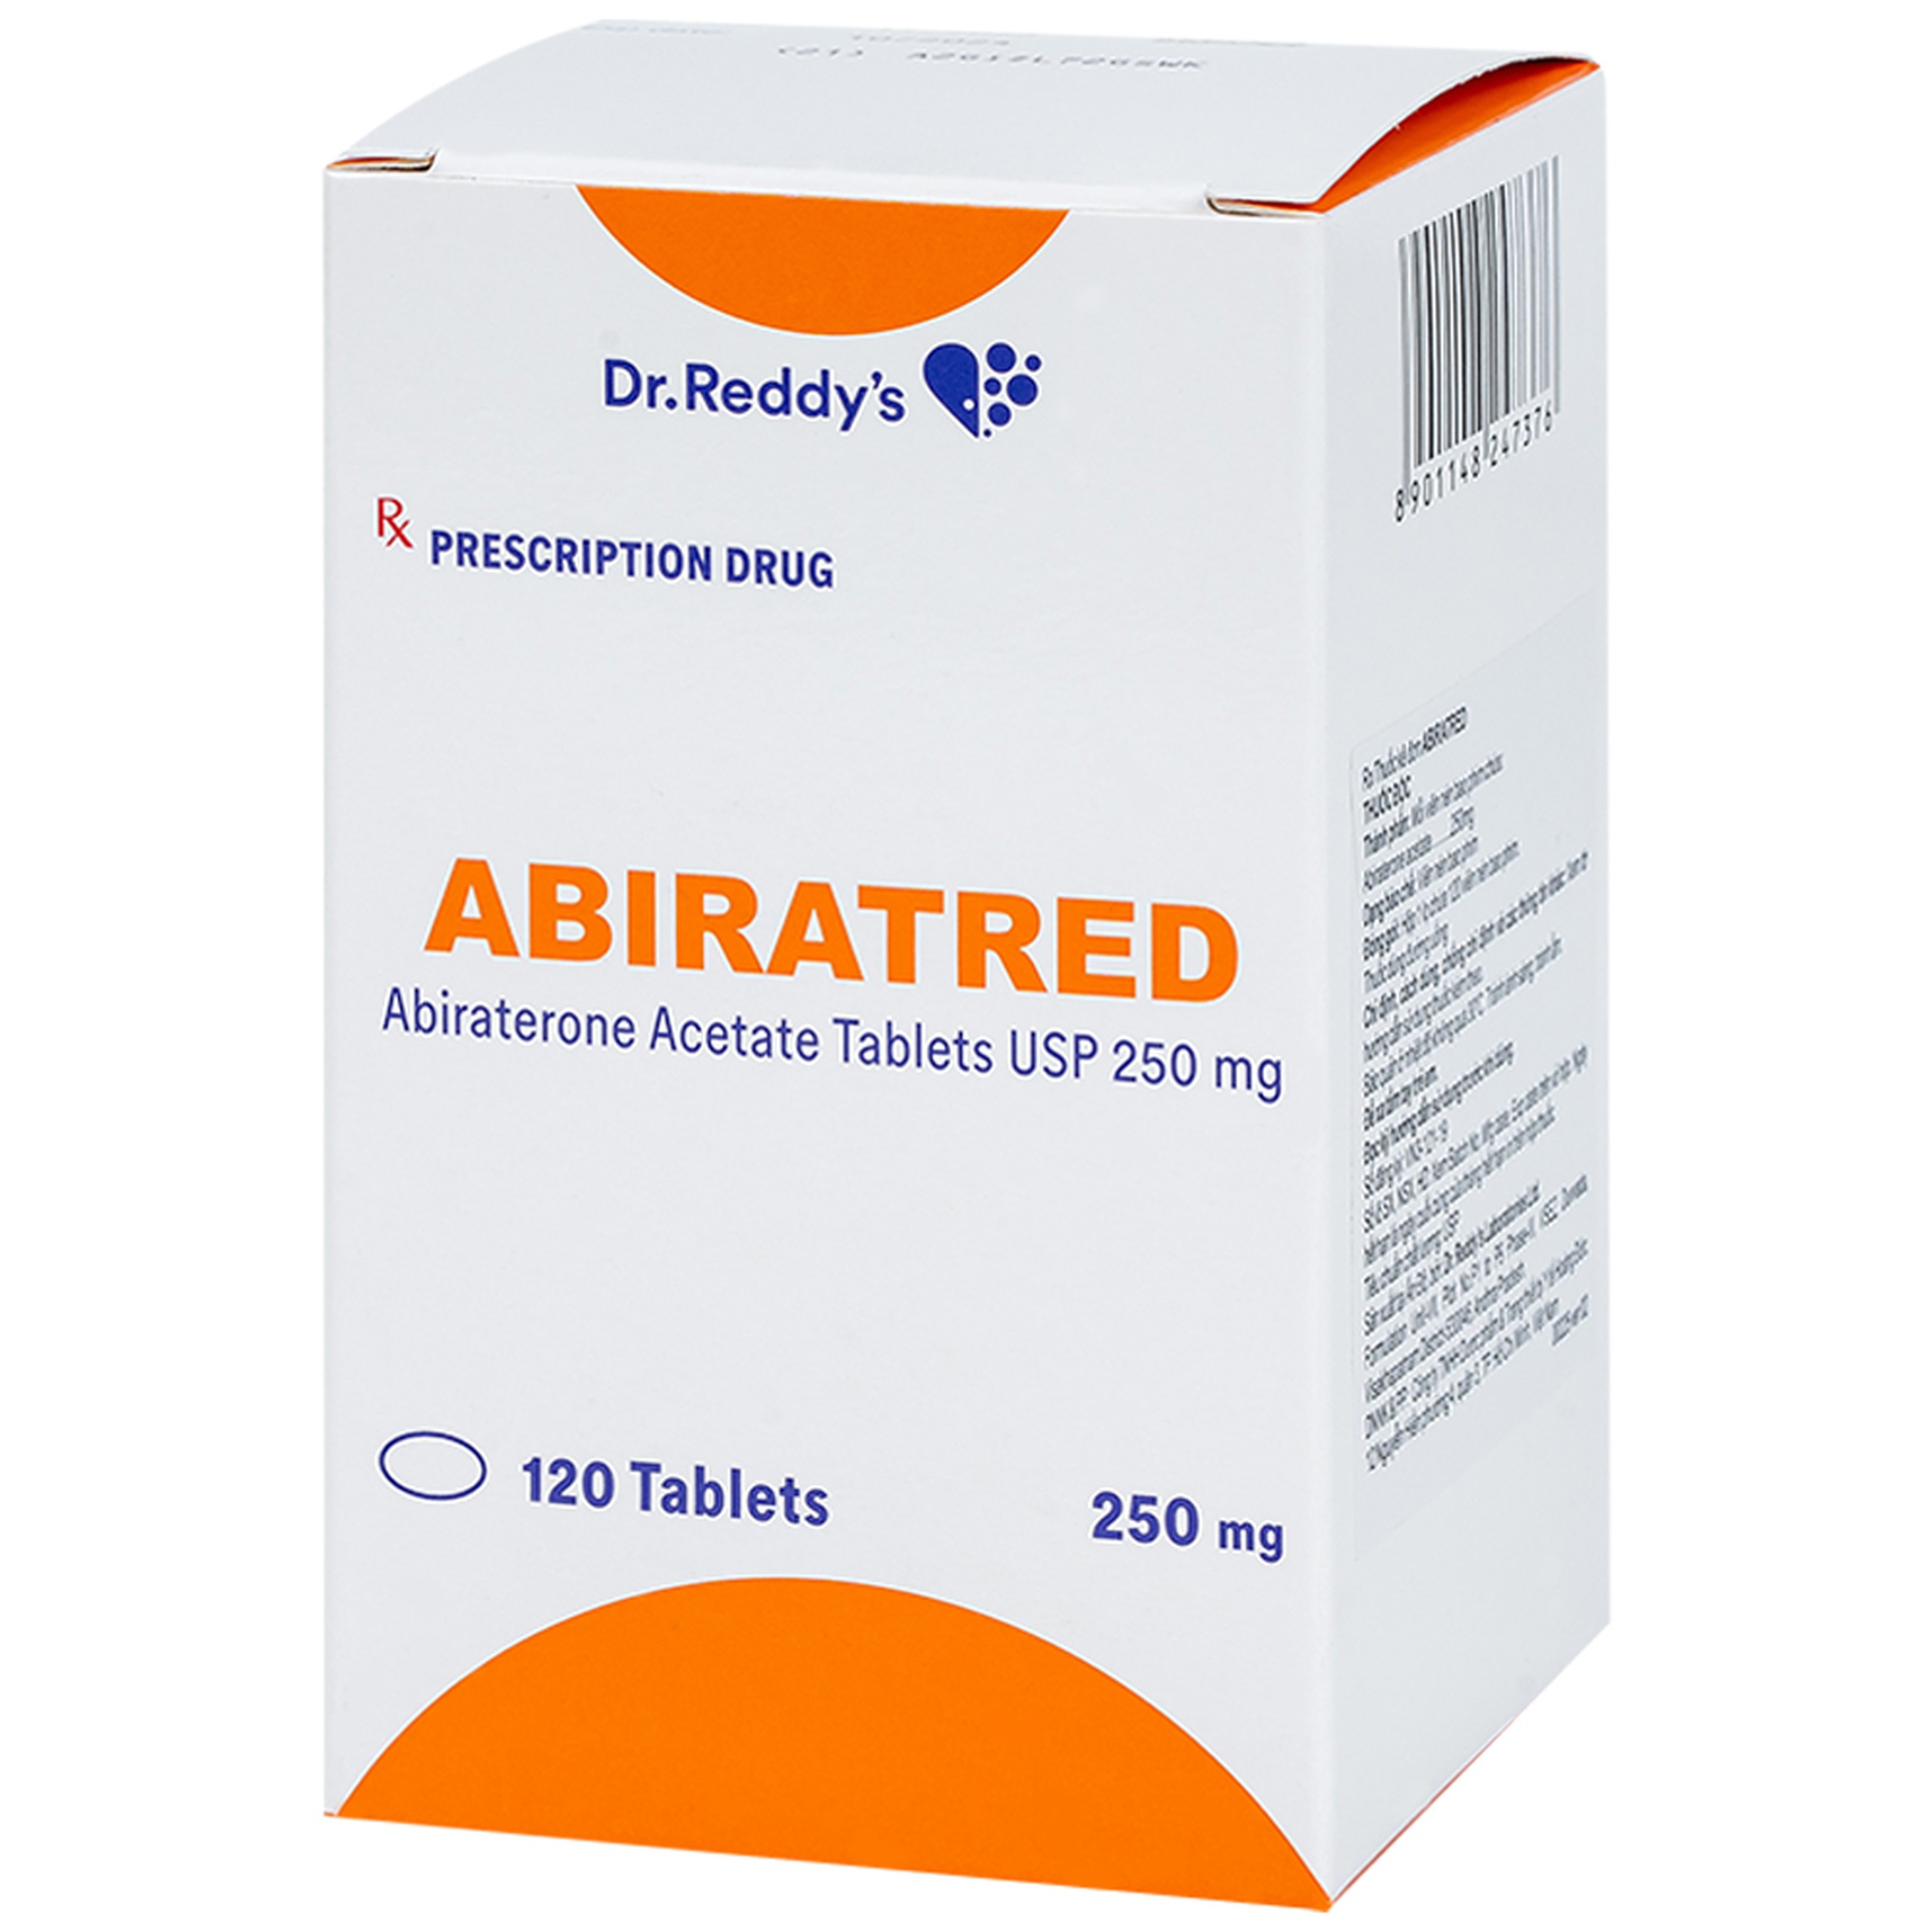 Thuốc Abiratred Dr. Reddy điều trị bệnh ung thư tiền liệt tuyến (120 viên)